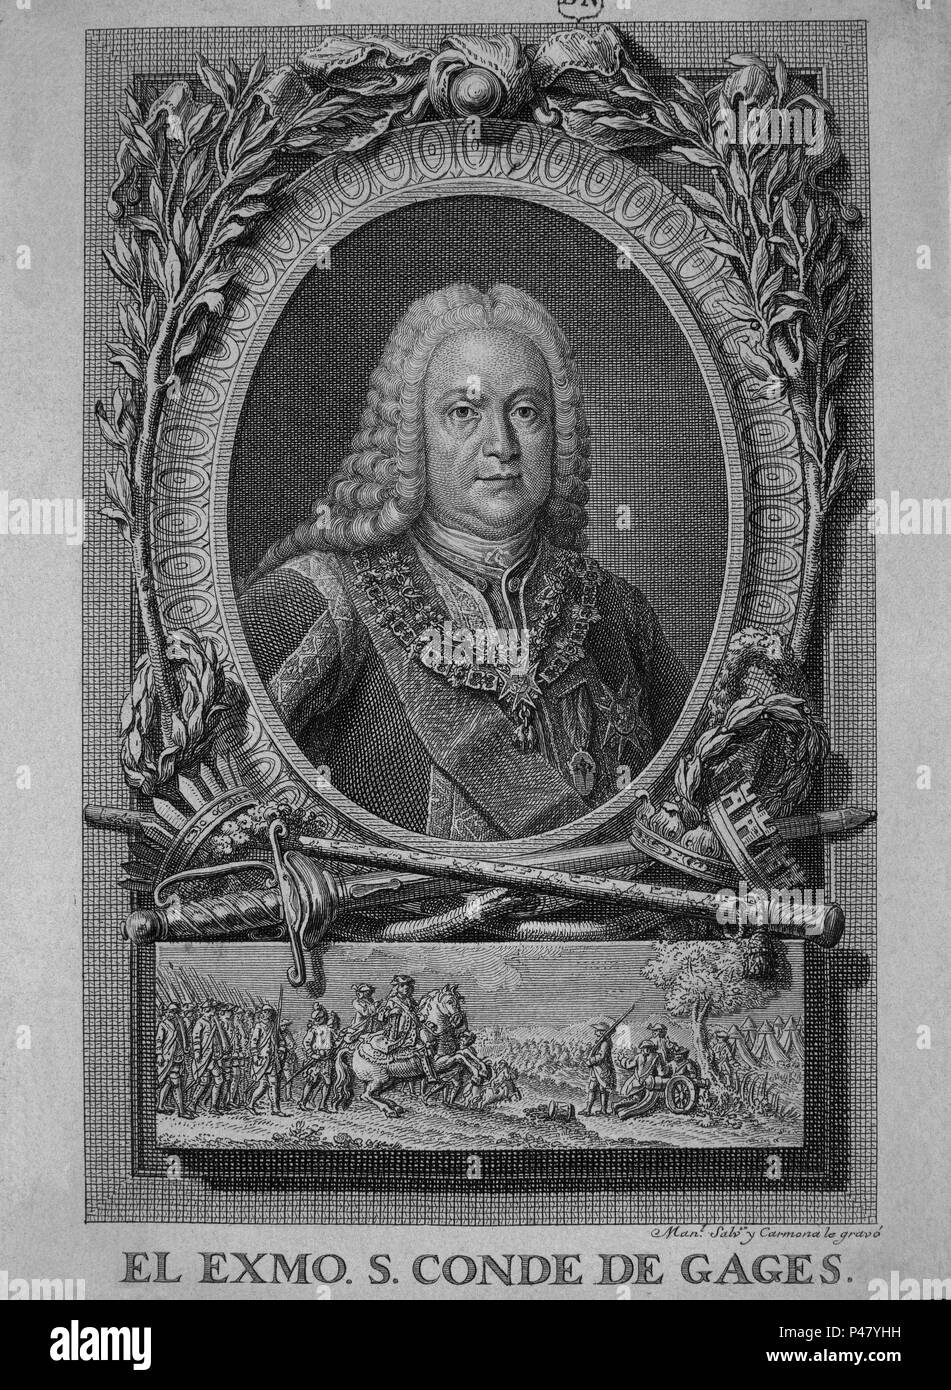 JOSE BUENAVENTURA CONDE DE GAGES (1682-1753) - GRABADO SIGLO XVIII. Author: Manuel Salvador Carmona (1734-1820). Location: BIBLIOTECA NACIONAL-COLECCION, MADRID, SPAIN. Stock Photo